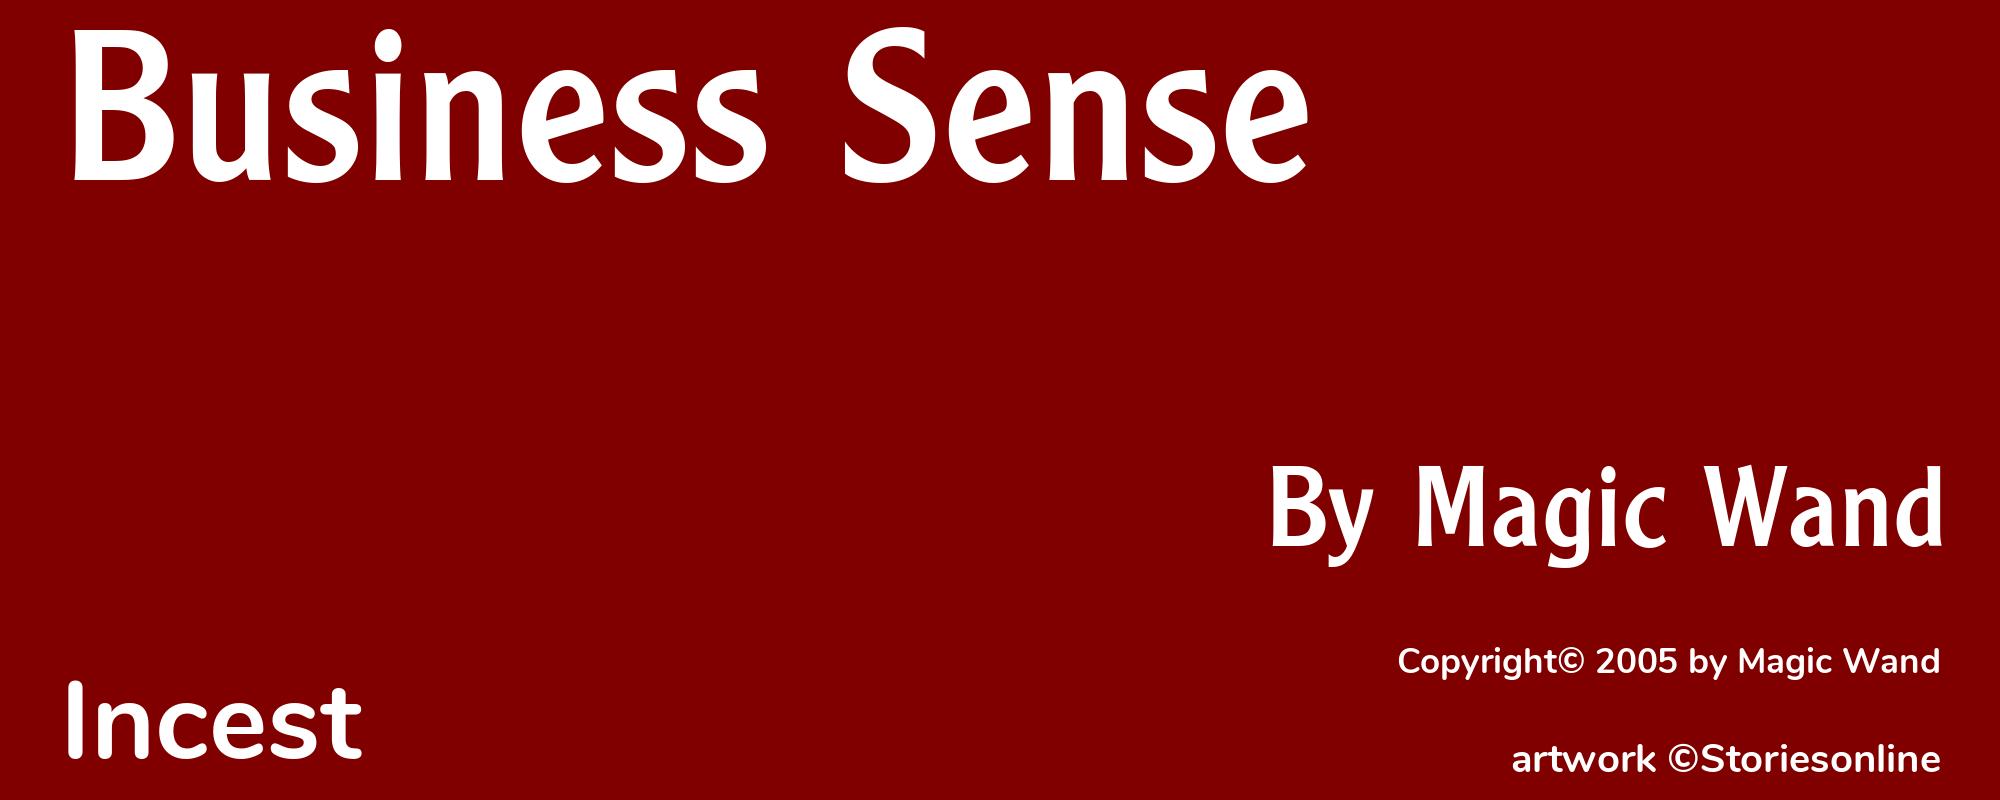 Business Sense - Cover